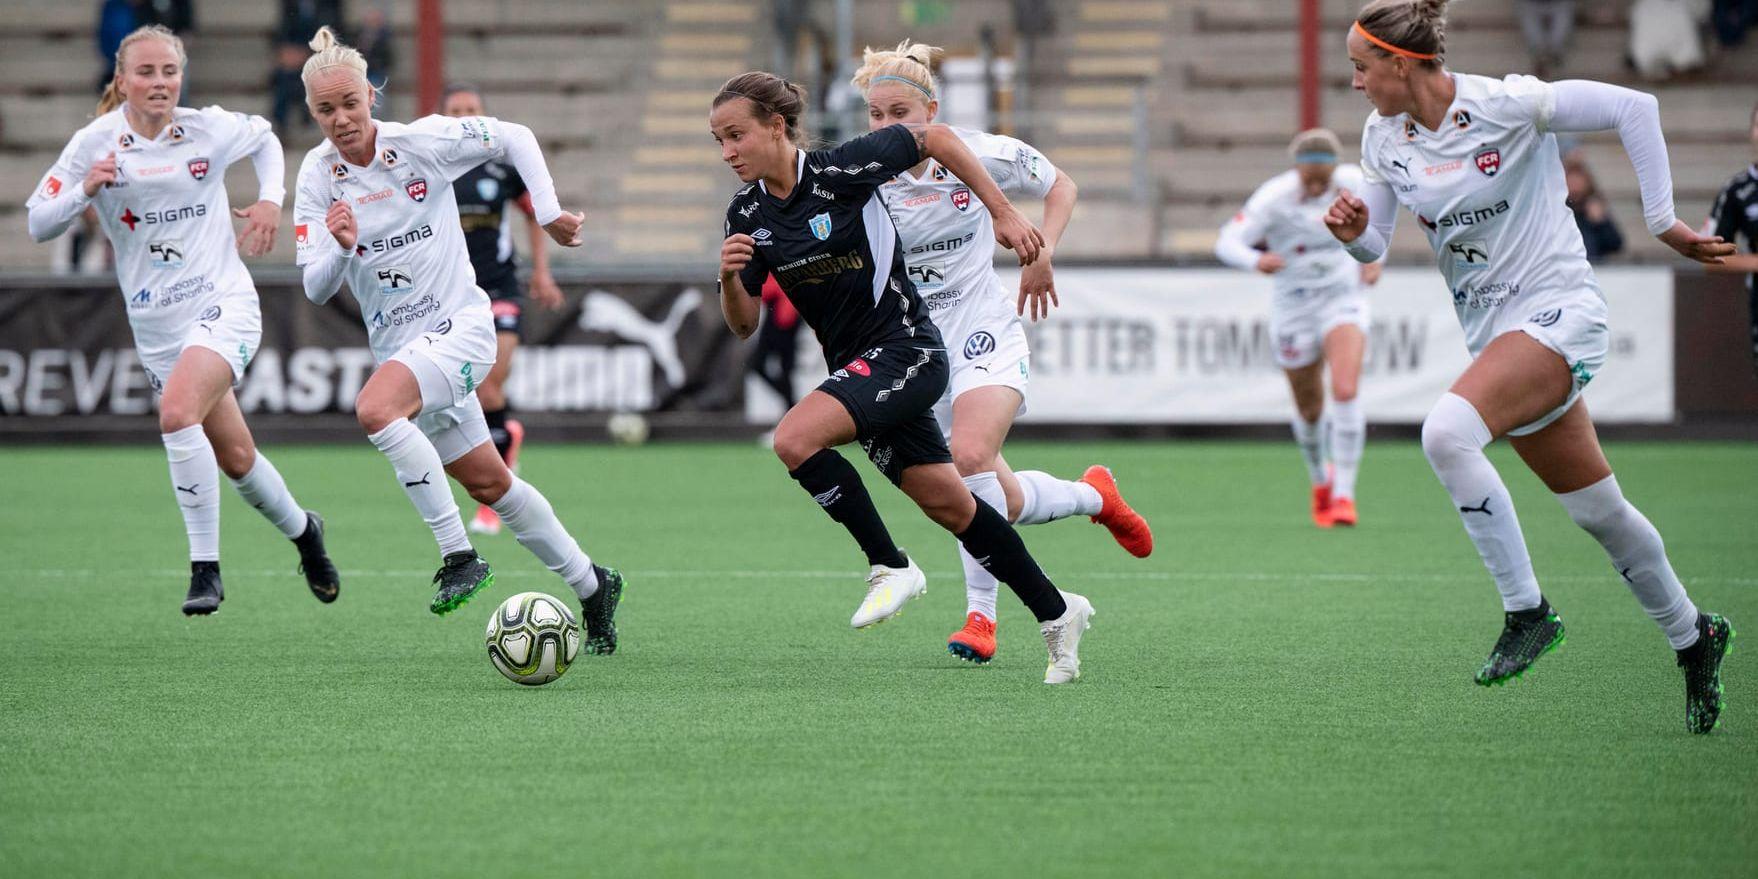 Göteborgsyttern Julia Zigiotti Olme jagas av Rosengårdsspelare under det högdramatiska allsvenska mötet på Malmö IP. Matchen slutade 2–2.